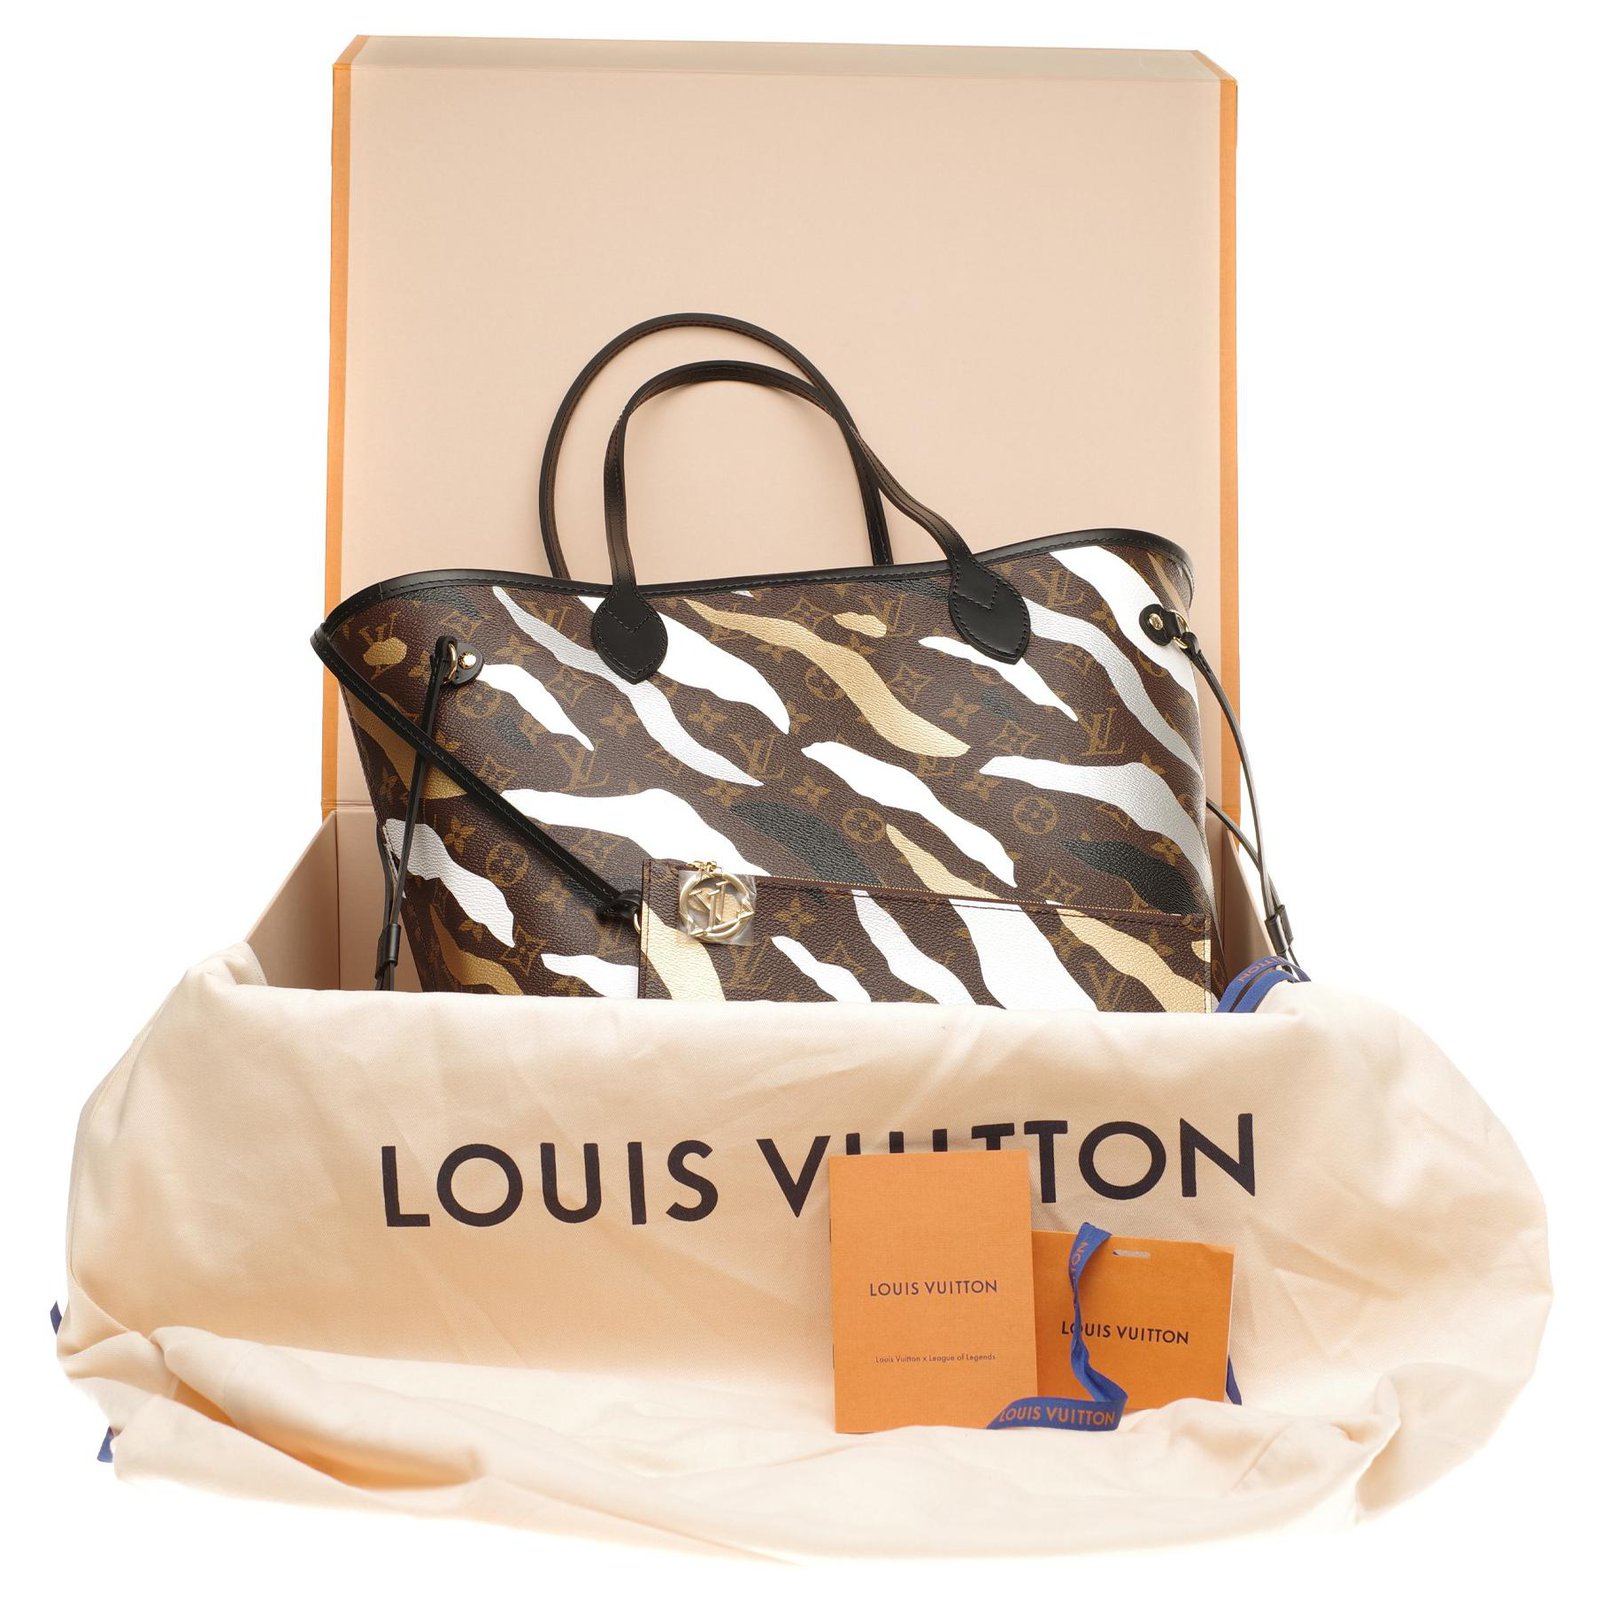 Bộ sưu tập thời trang xa xỉ kết hợp giữa Louis Vuitton và LoL bay sạch  sau một giờ mở bán